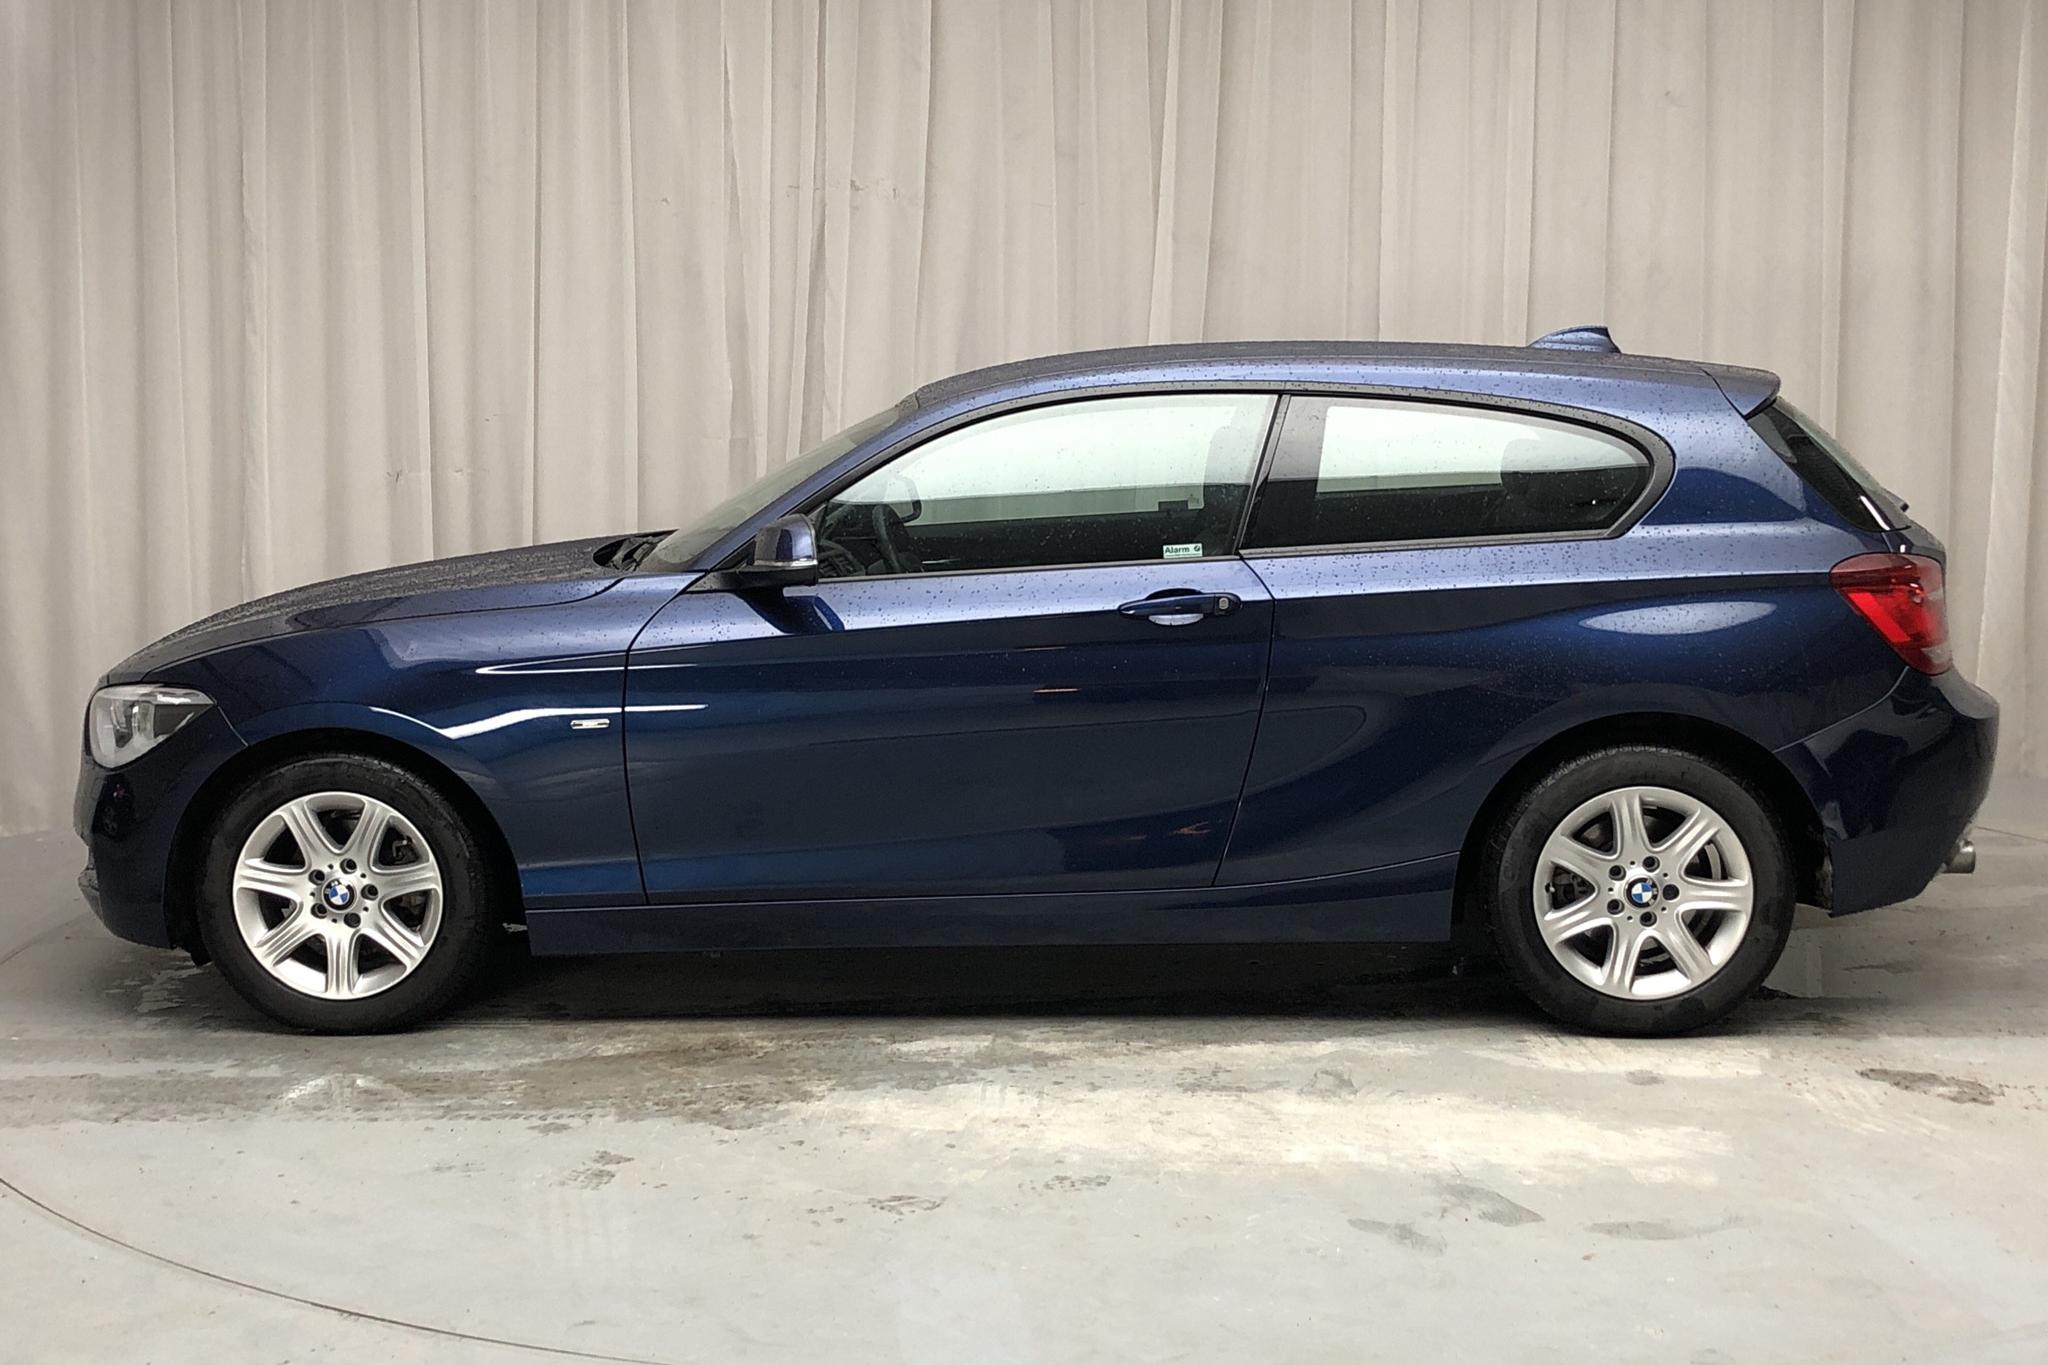 BMW 118d 3dr, F21 (143hk) - 5 460 km - Manual - blue - 2013